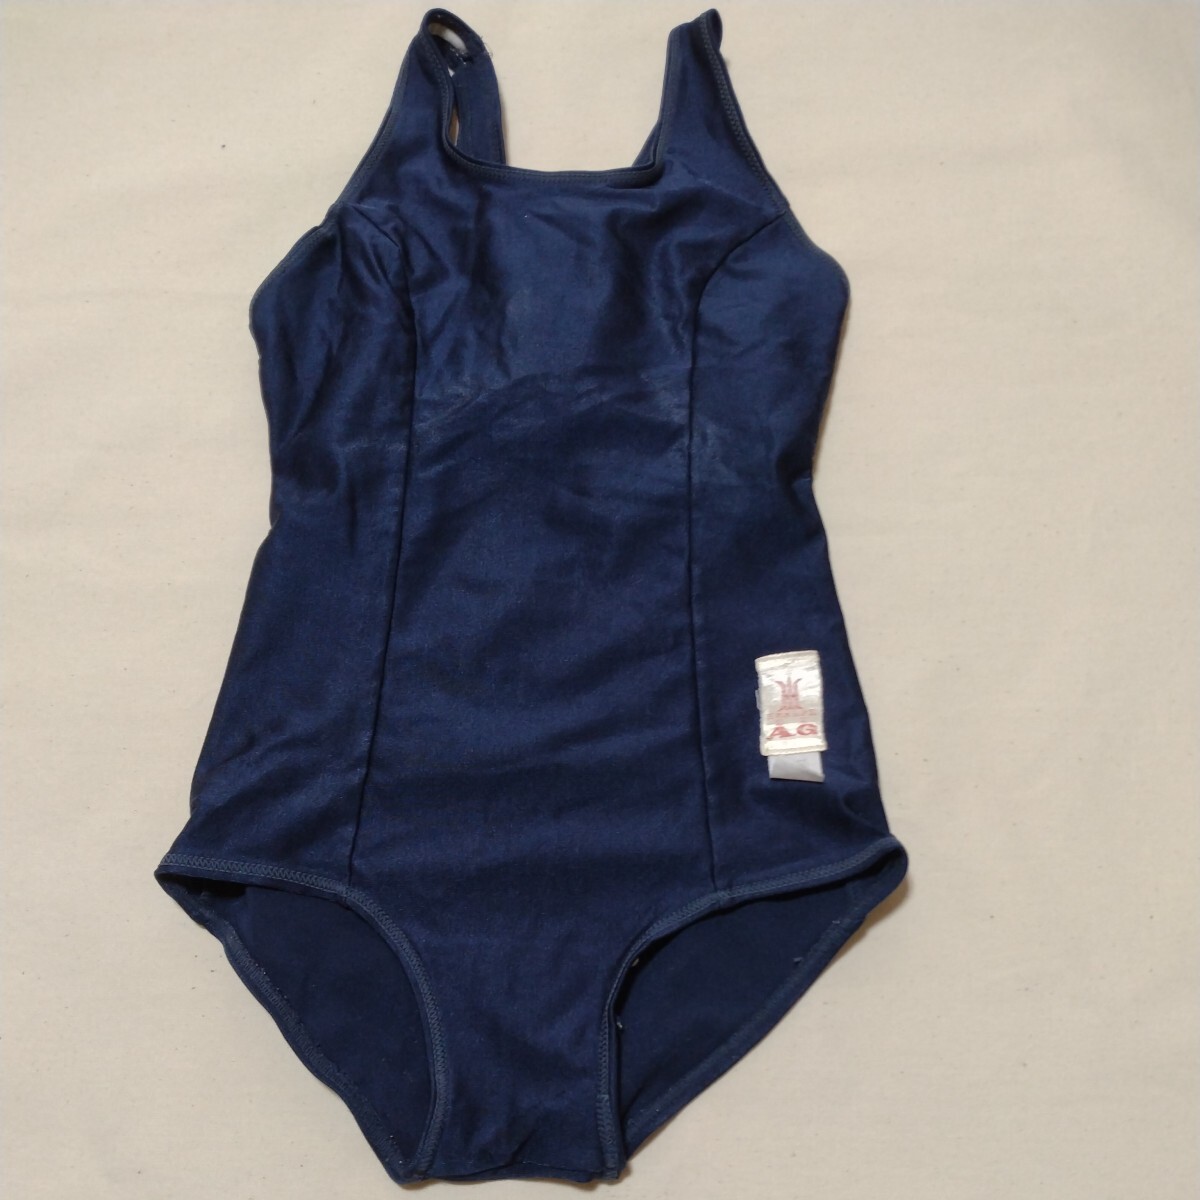 ワンピース水着 日本水泳連盟認定 A.G ゴールドウィン 1号 ネイビー ホームクリーニング済 コスプレ衣装 女子の画像1